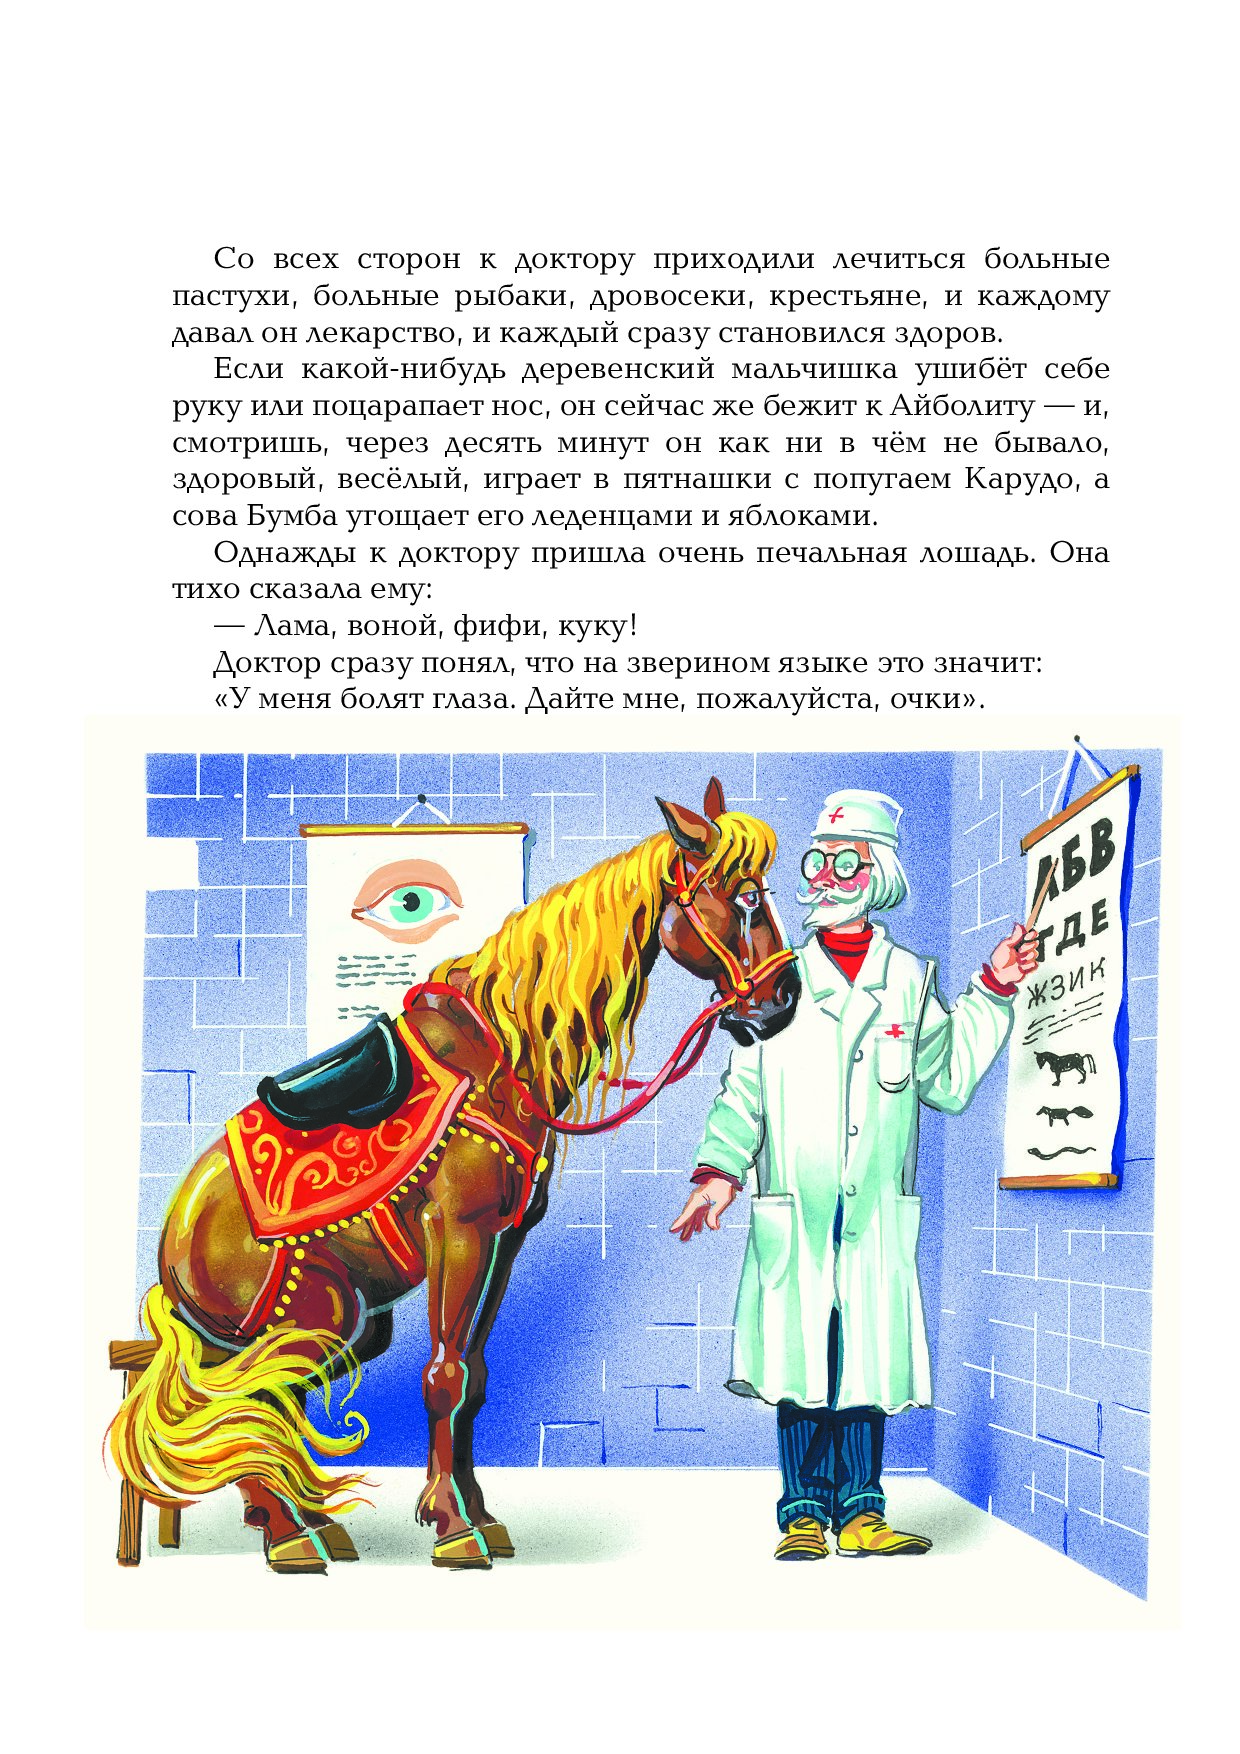 Написал сказку айболит: «Как я написал сказку Доктор Айболит» Корней Чуковский